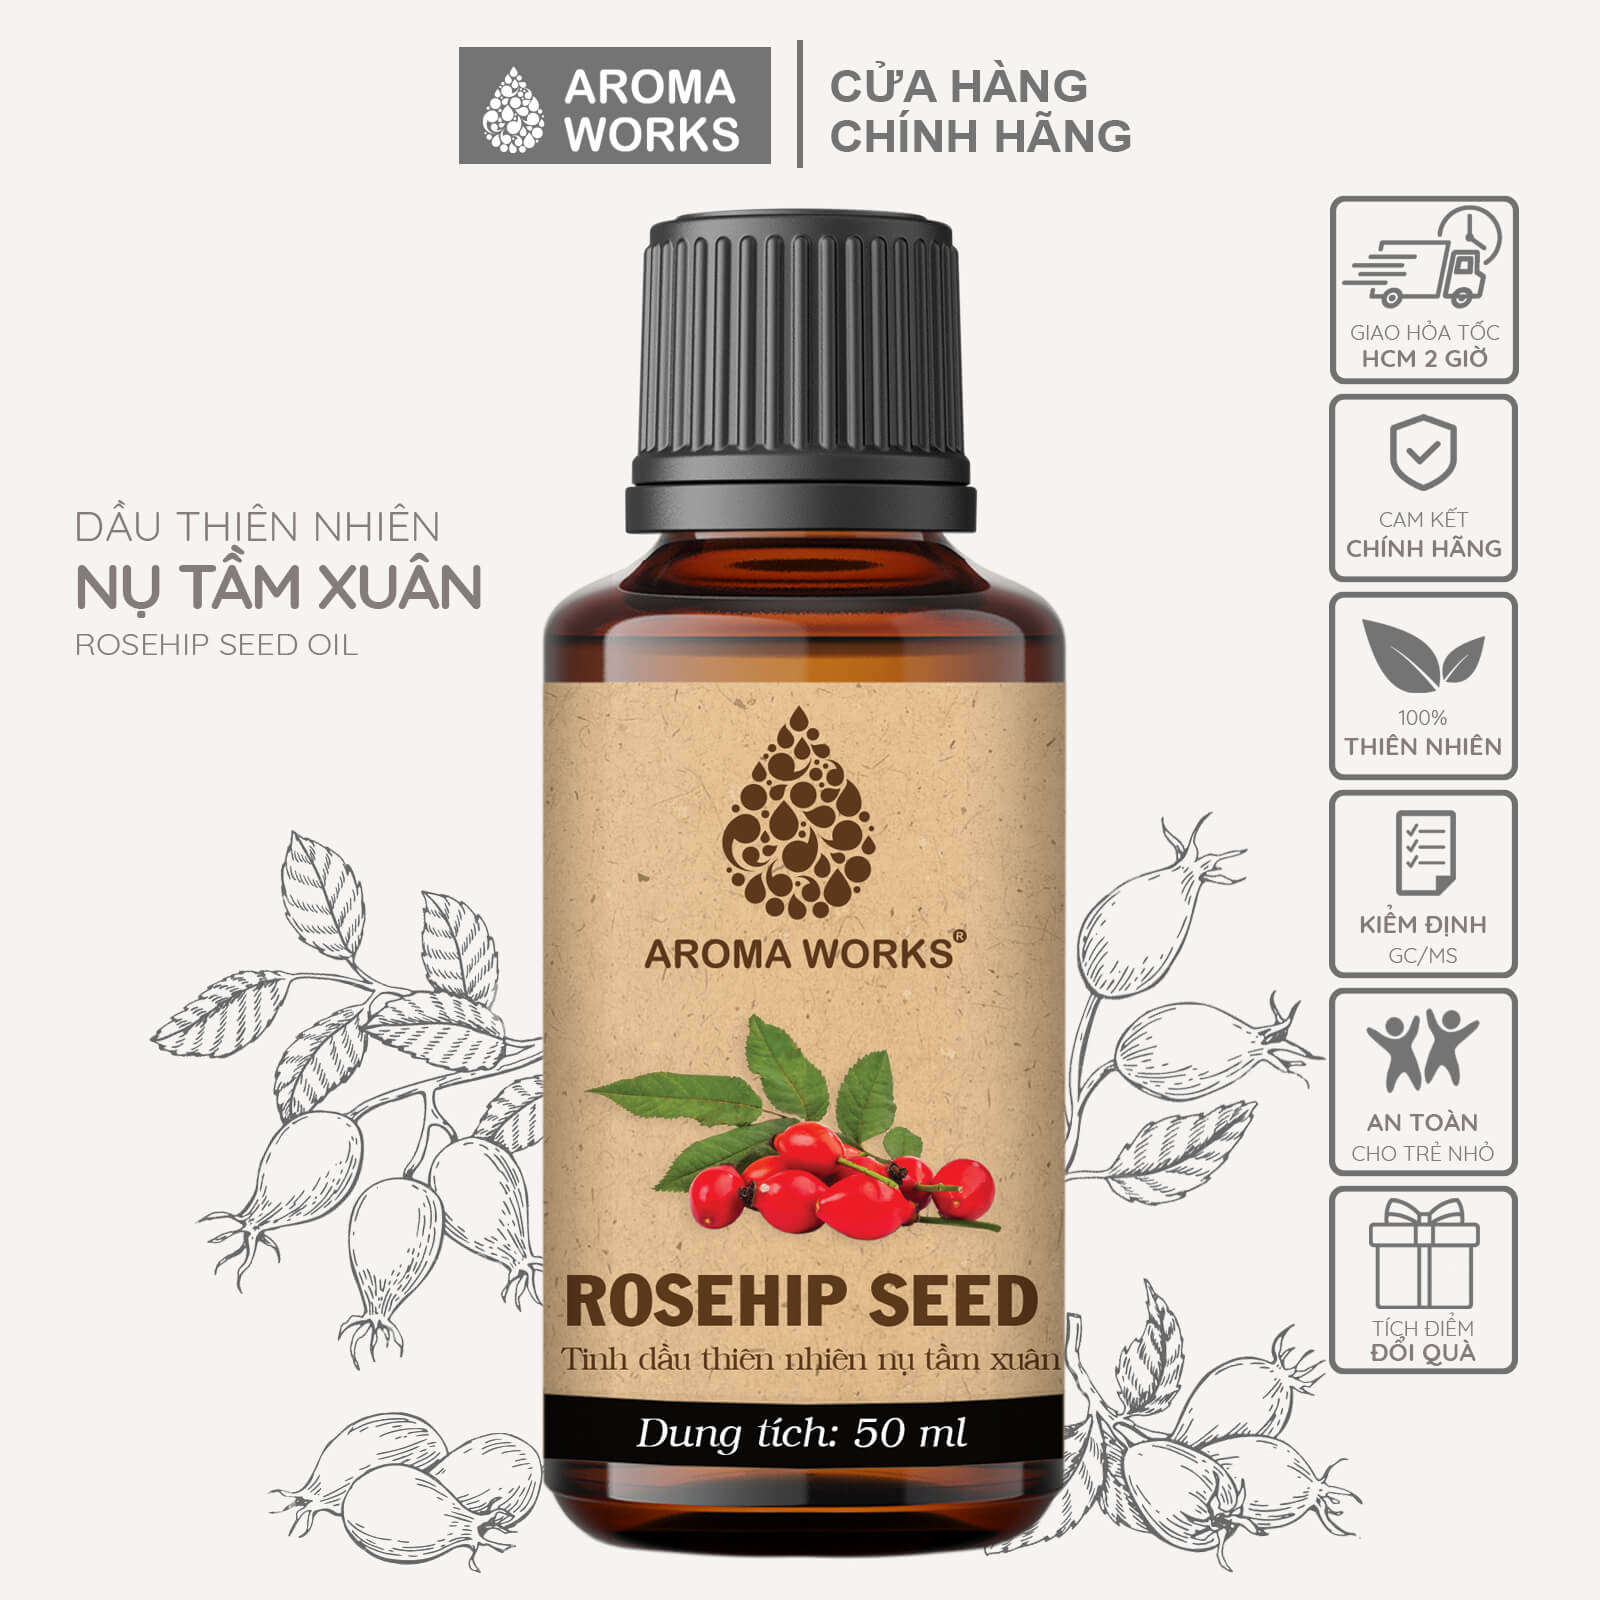 Dầu Nụ tầm xuân Aroma Works Organic Rosehip Seed Oil dưỡng da, cấp ẩm